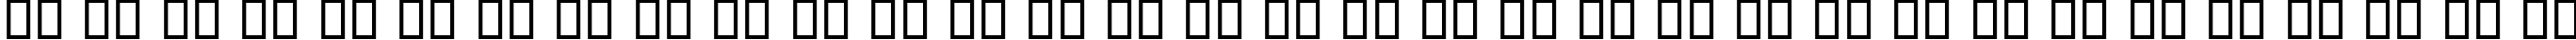 Пример написания русского алфавита шрифтом B Roya